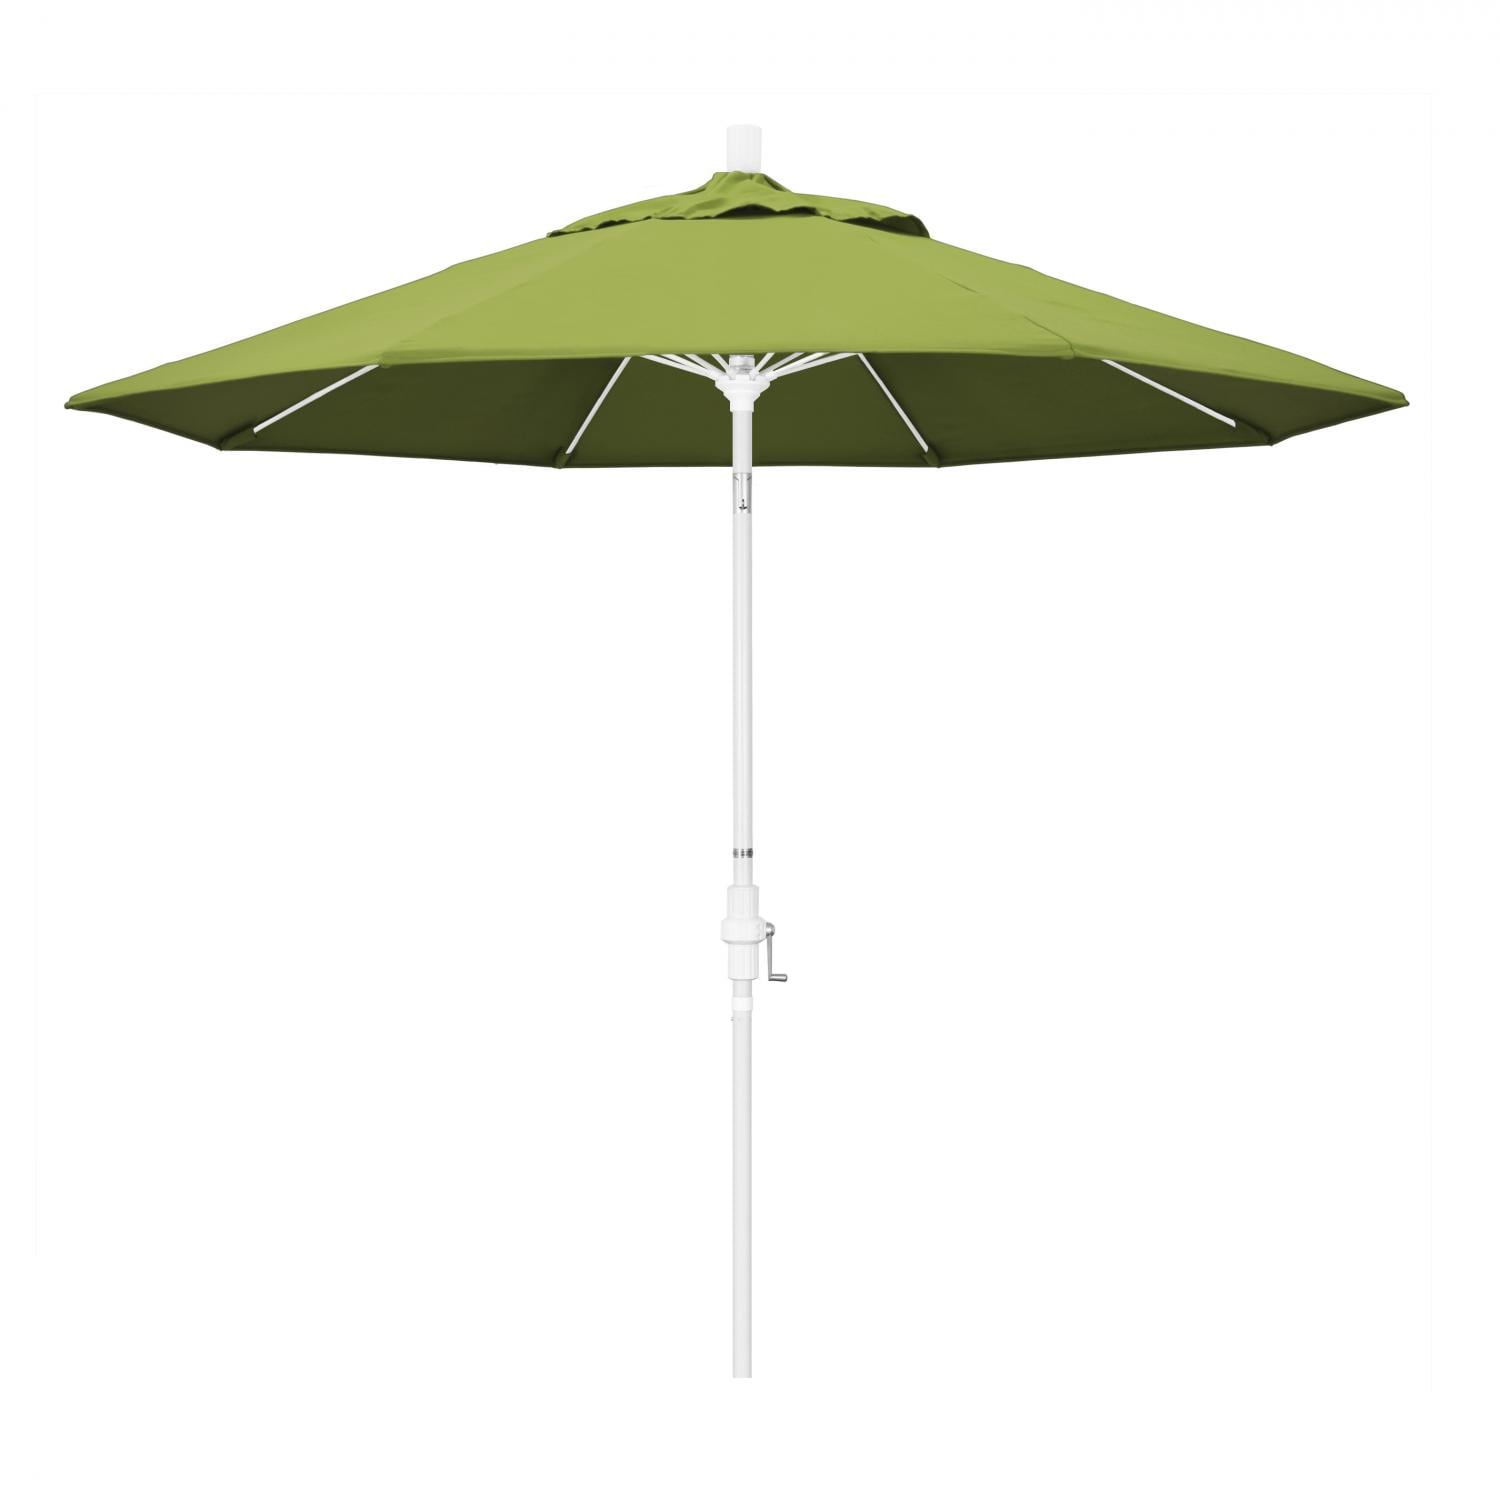 California Umbrella 9' Patio Umbrella in Macaw - image 1 of 6